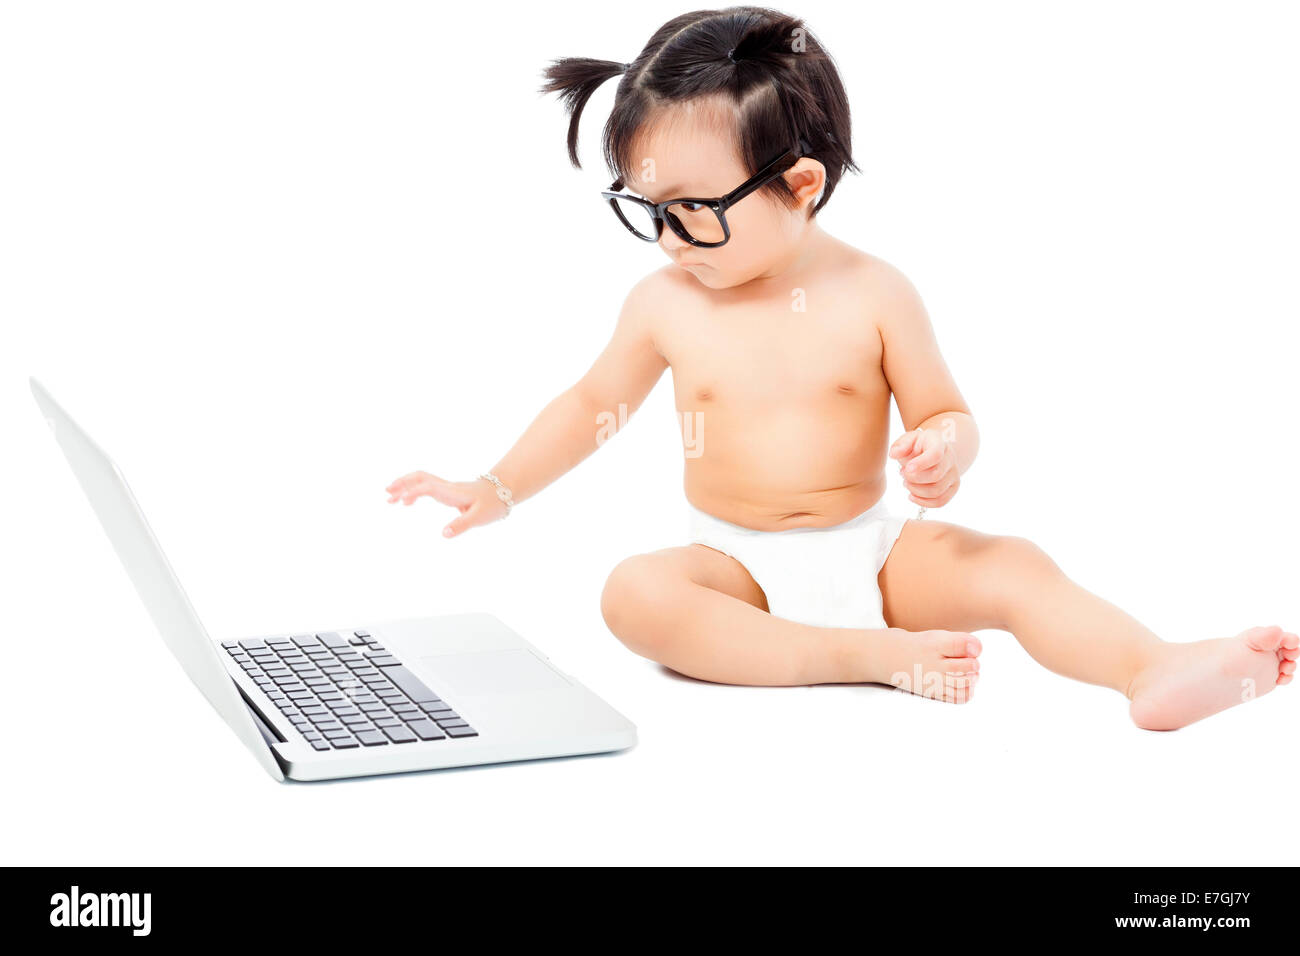 Piccolo bambino seduto a giocare su un laptop. isolato su sfondo bianco Foto Stock